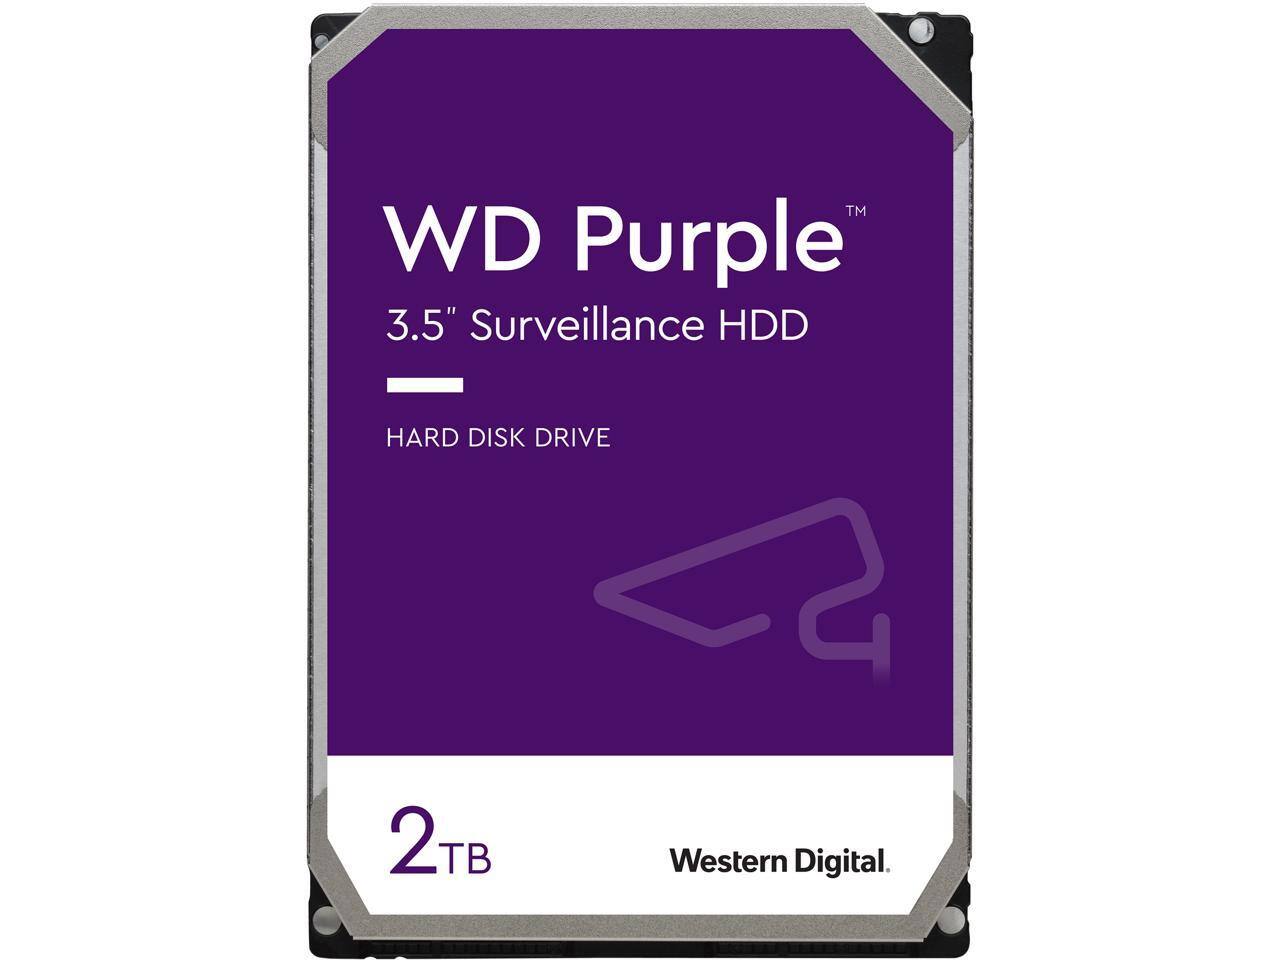 WD Purple WD20PURZ 2TB 5400 RPM Class SATA 6Gb/s 64MB Cache 3.5" Surveillance Hard Drive - $59.99 + FS